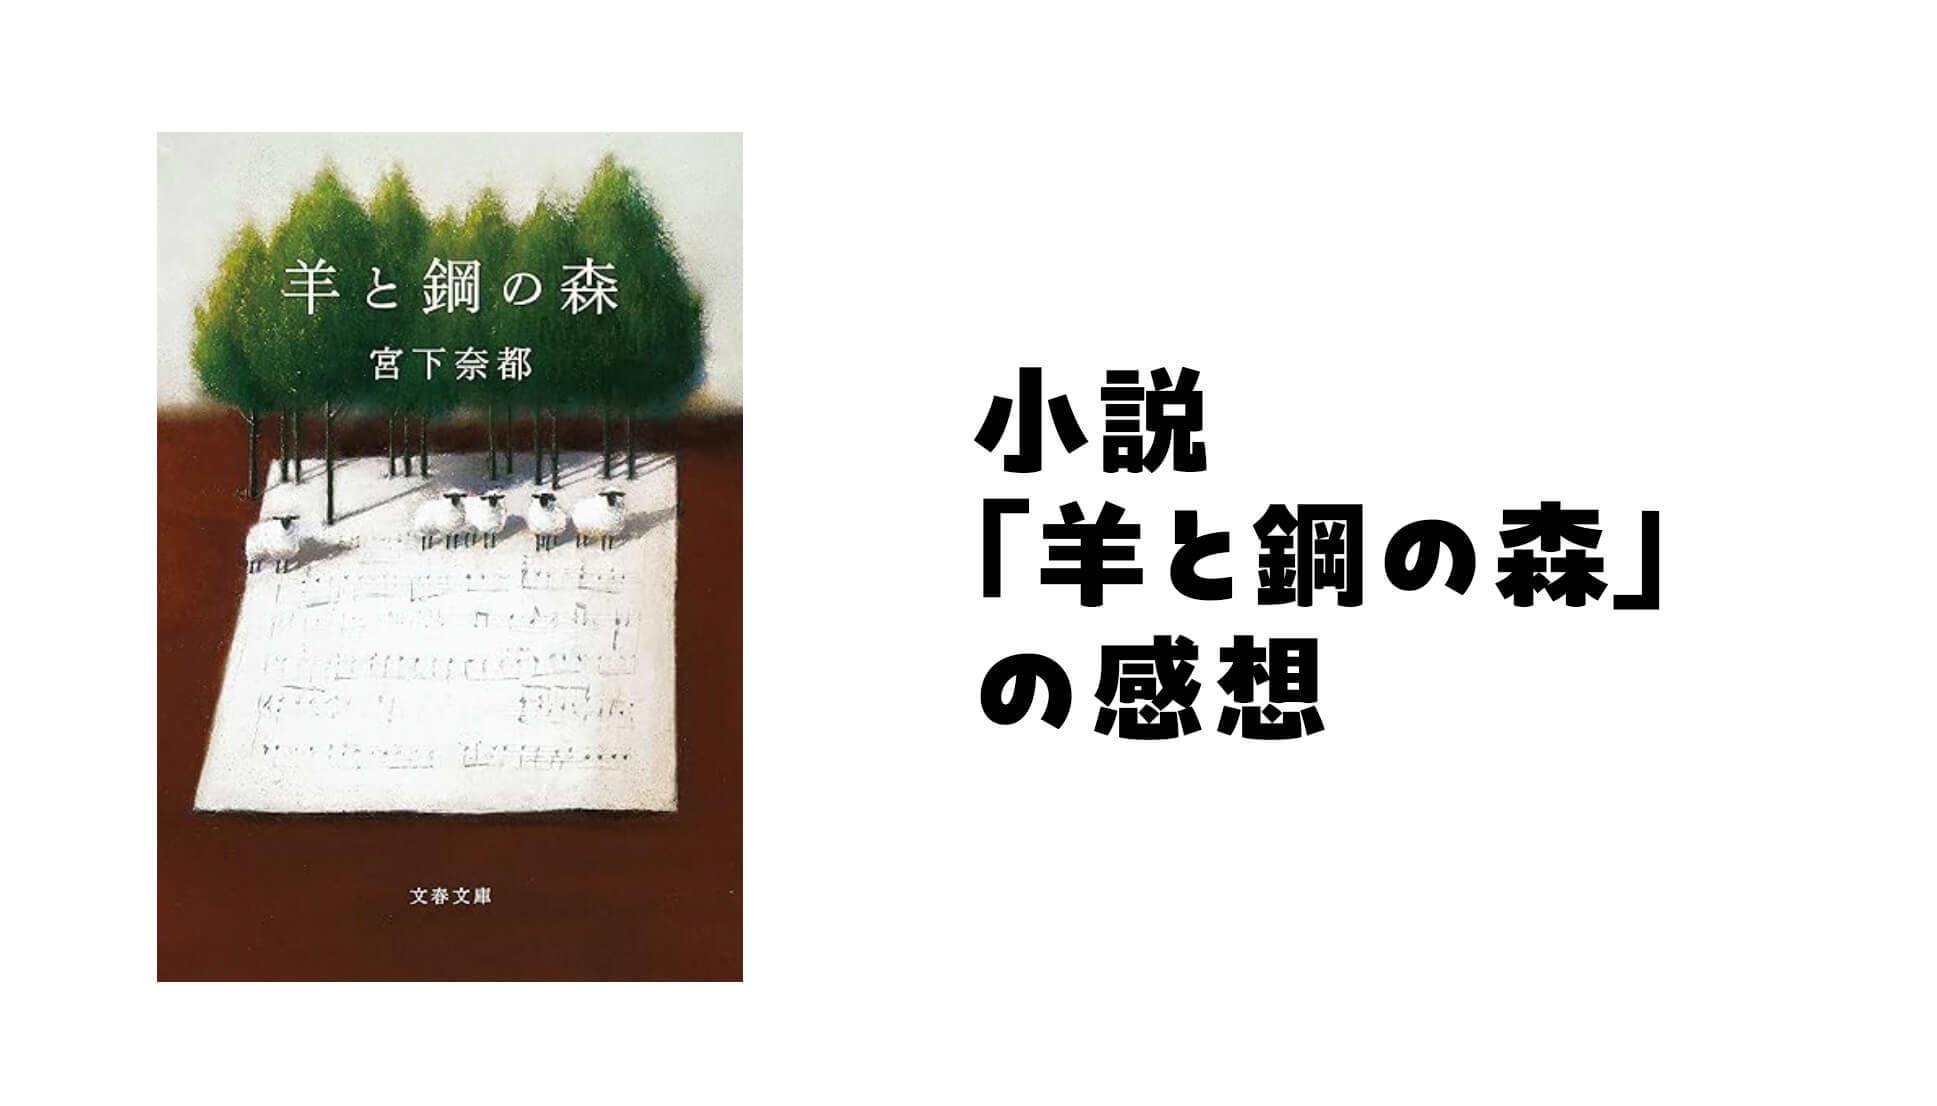 宮下奈都さんの小説「羊と鋼の森」の感想。音楽の高潔さに感動。